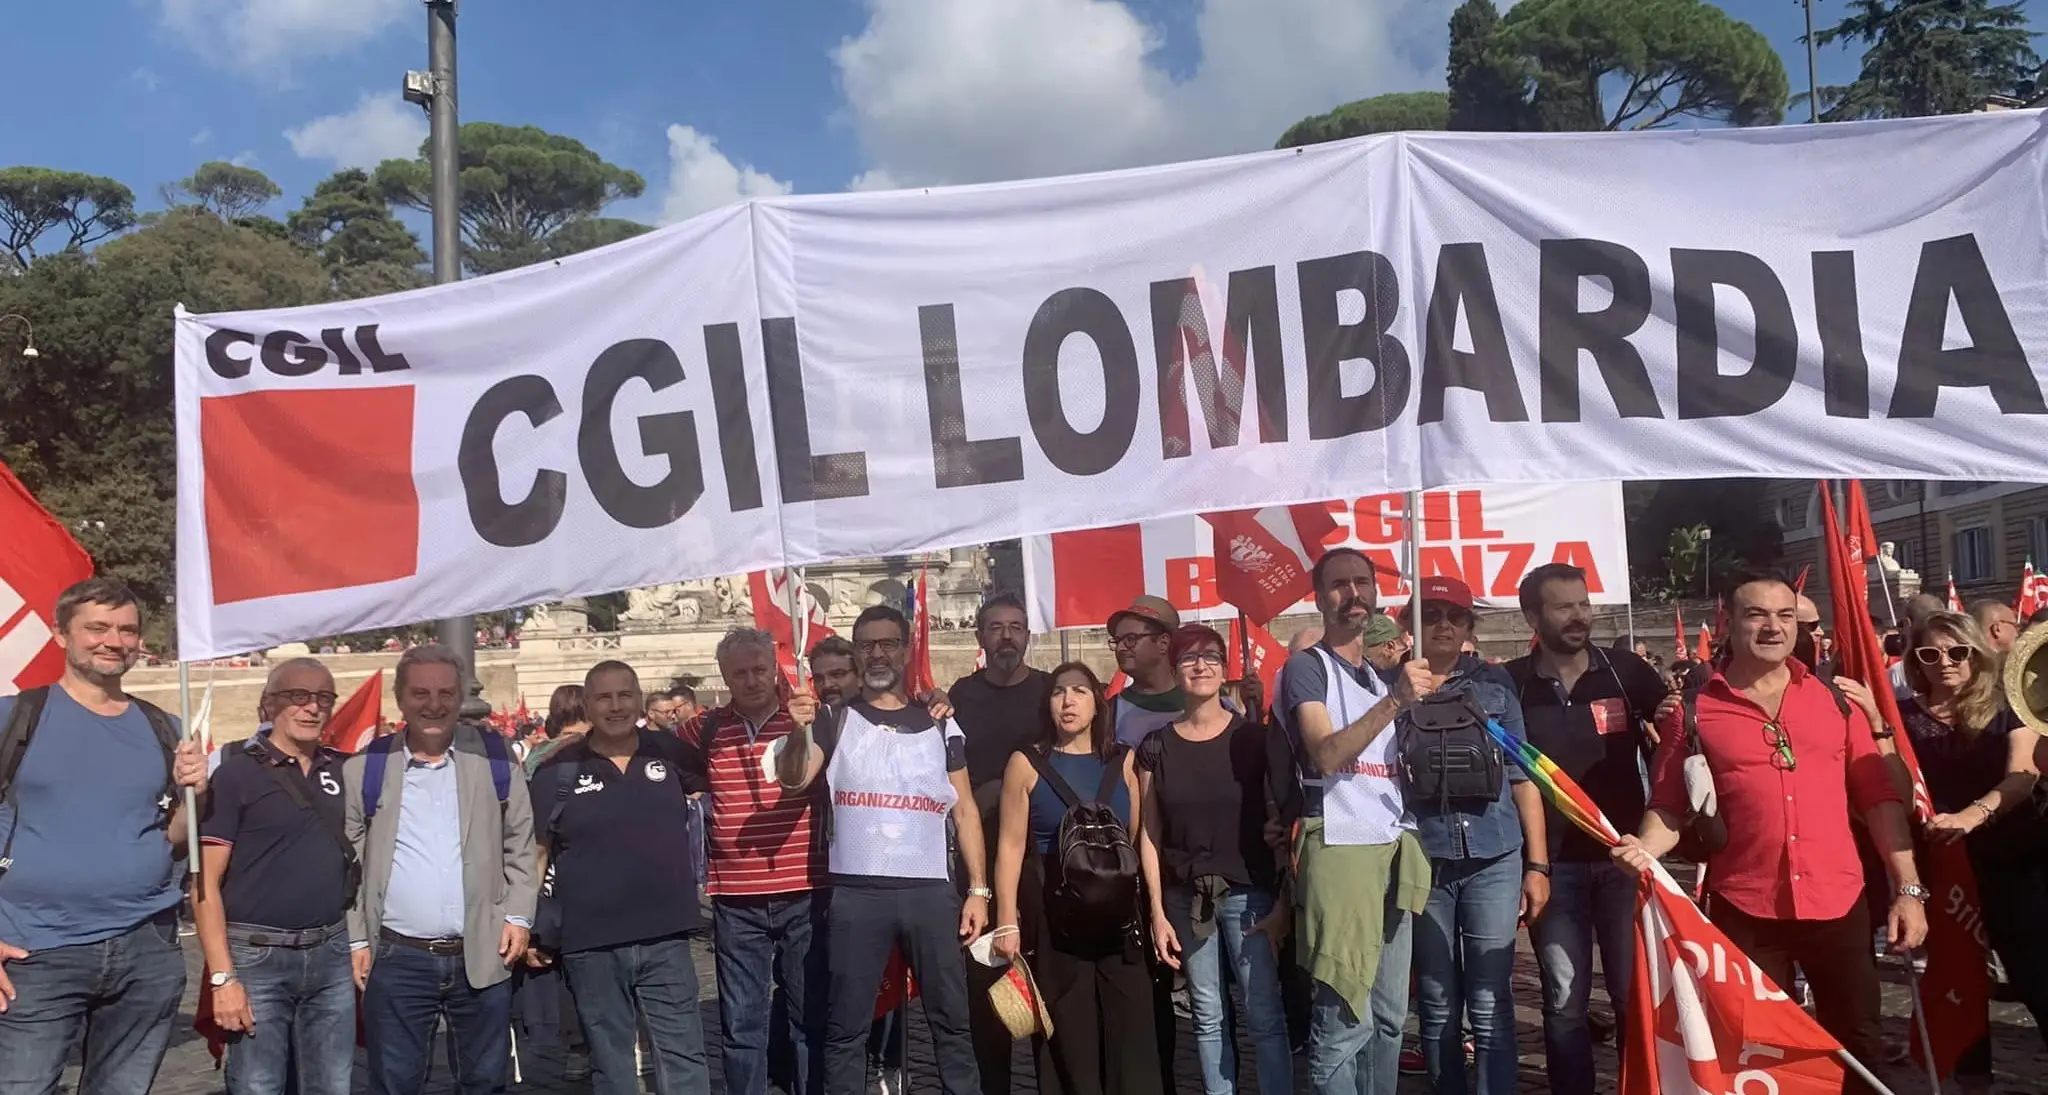 16 dicembre, sciopero generale di Cgil e Uil in Lombardia contro la manovra